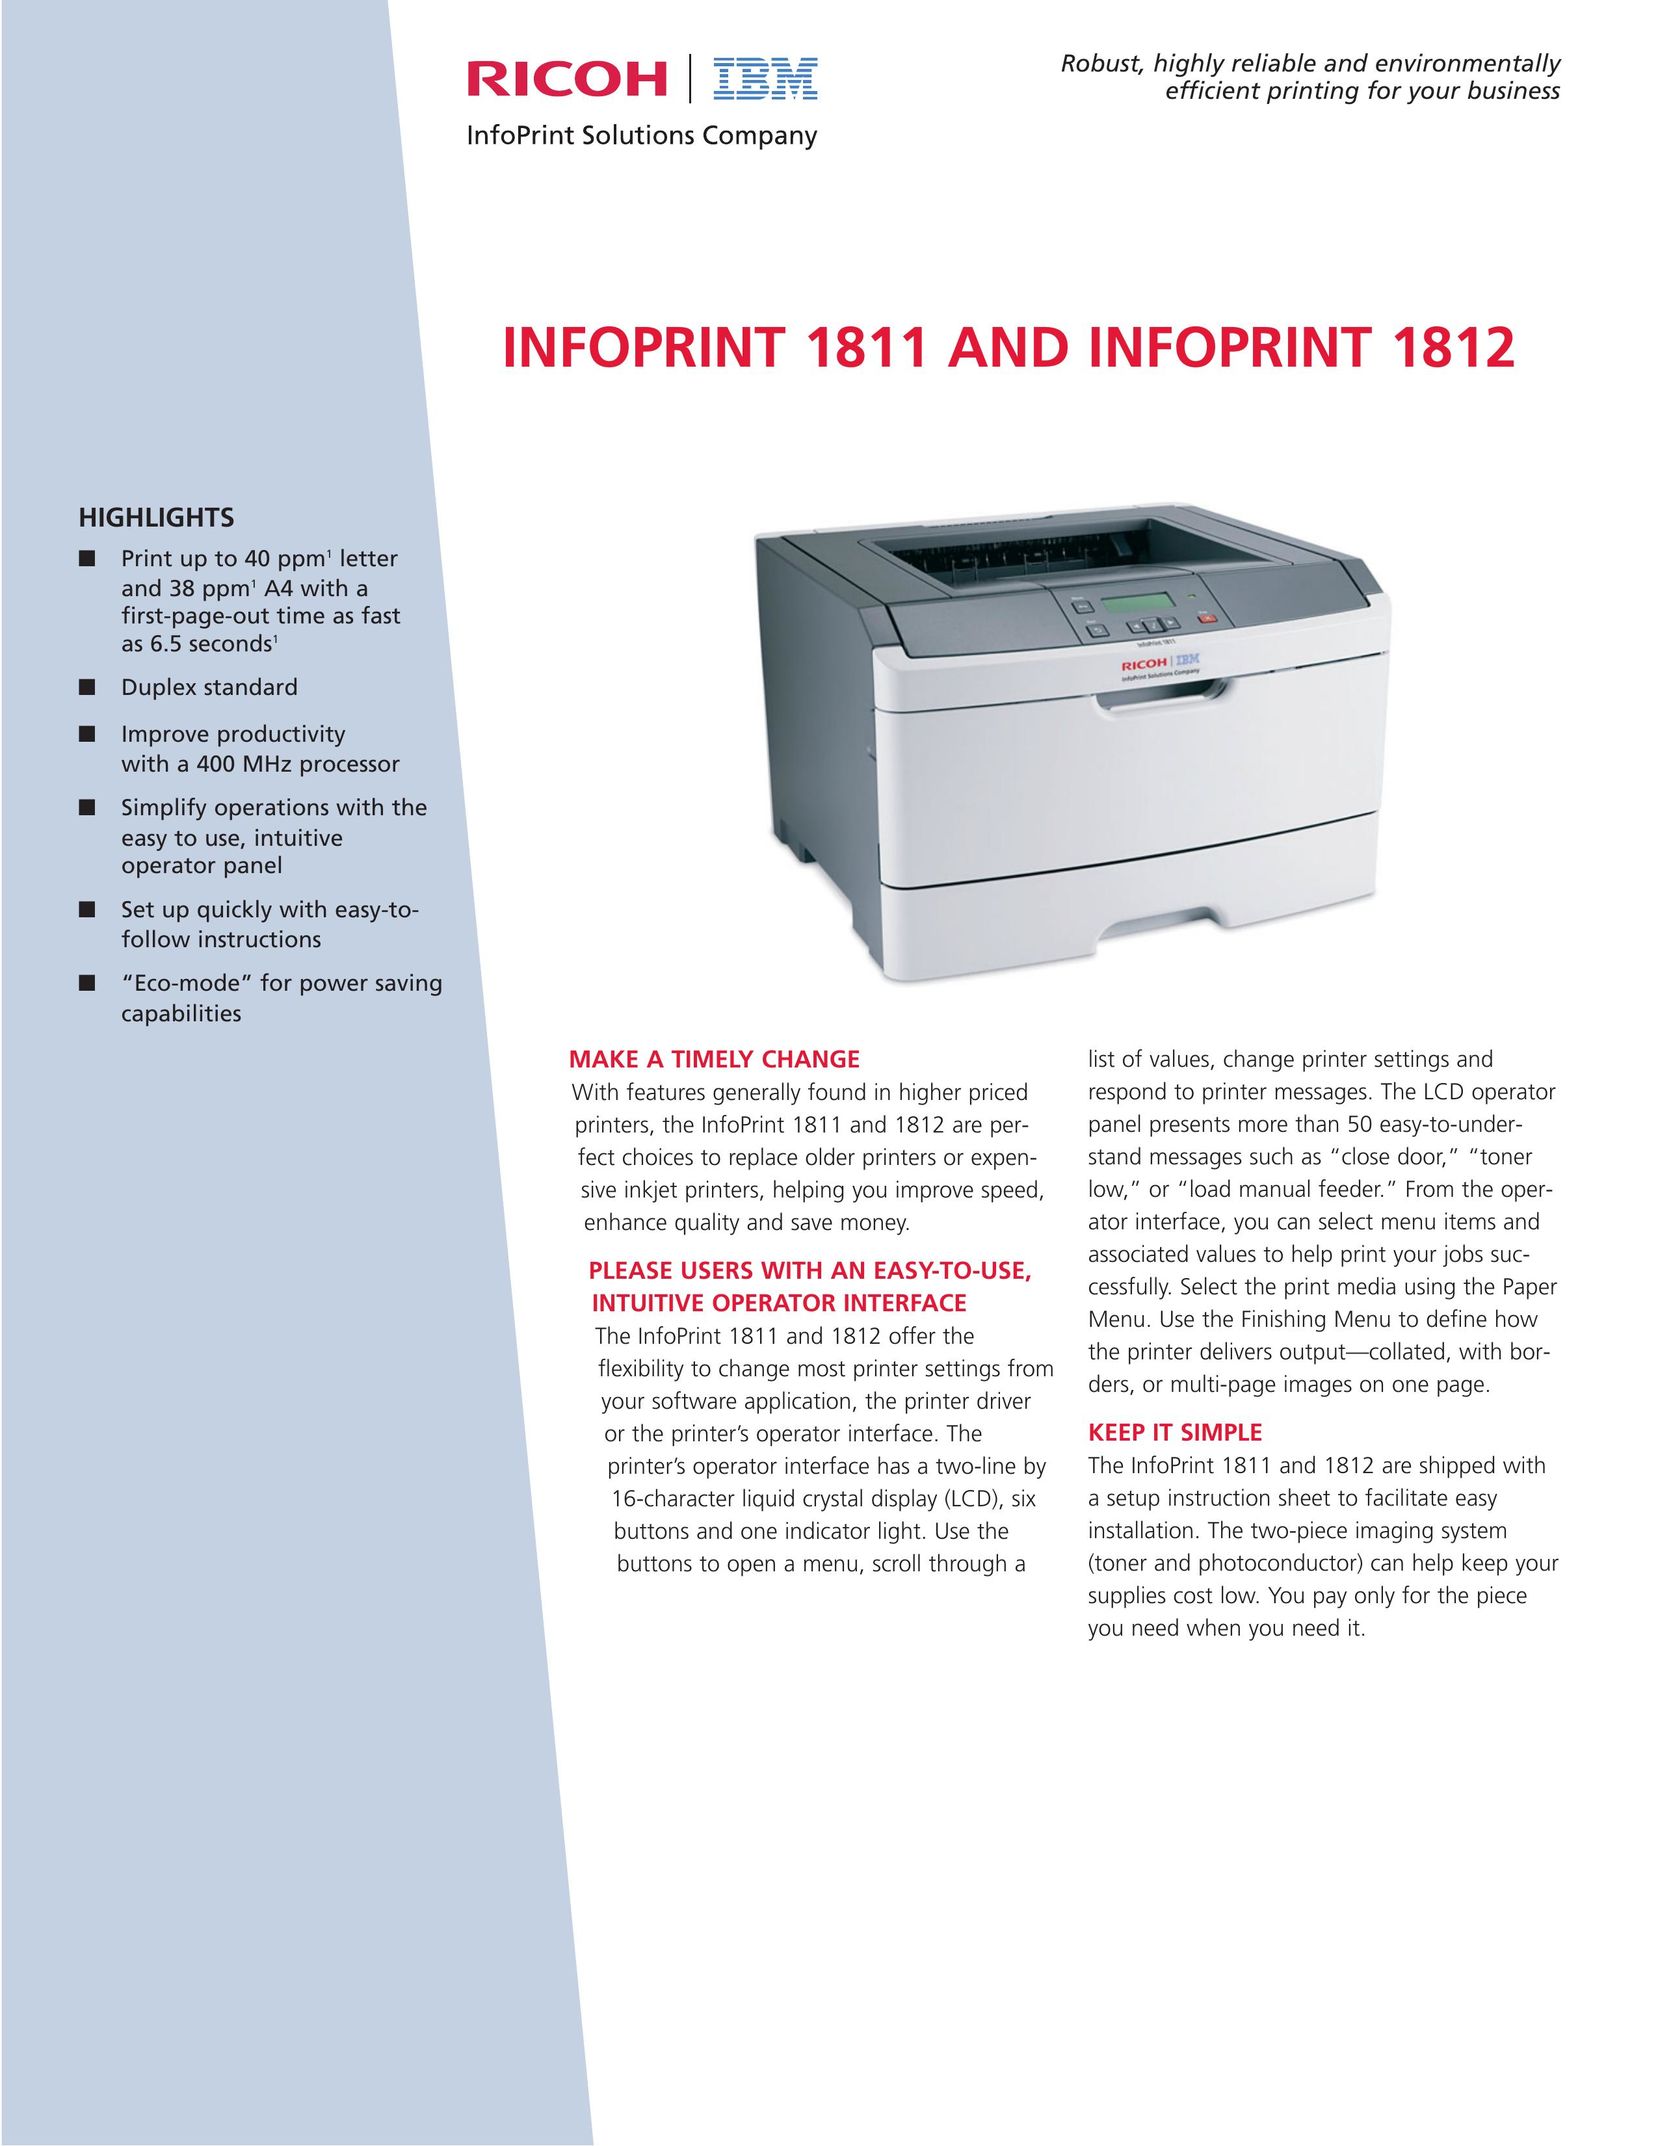 Ricoh 1811 Printer User Manual